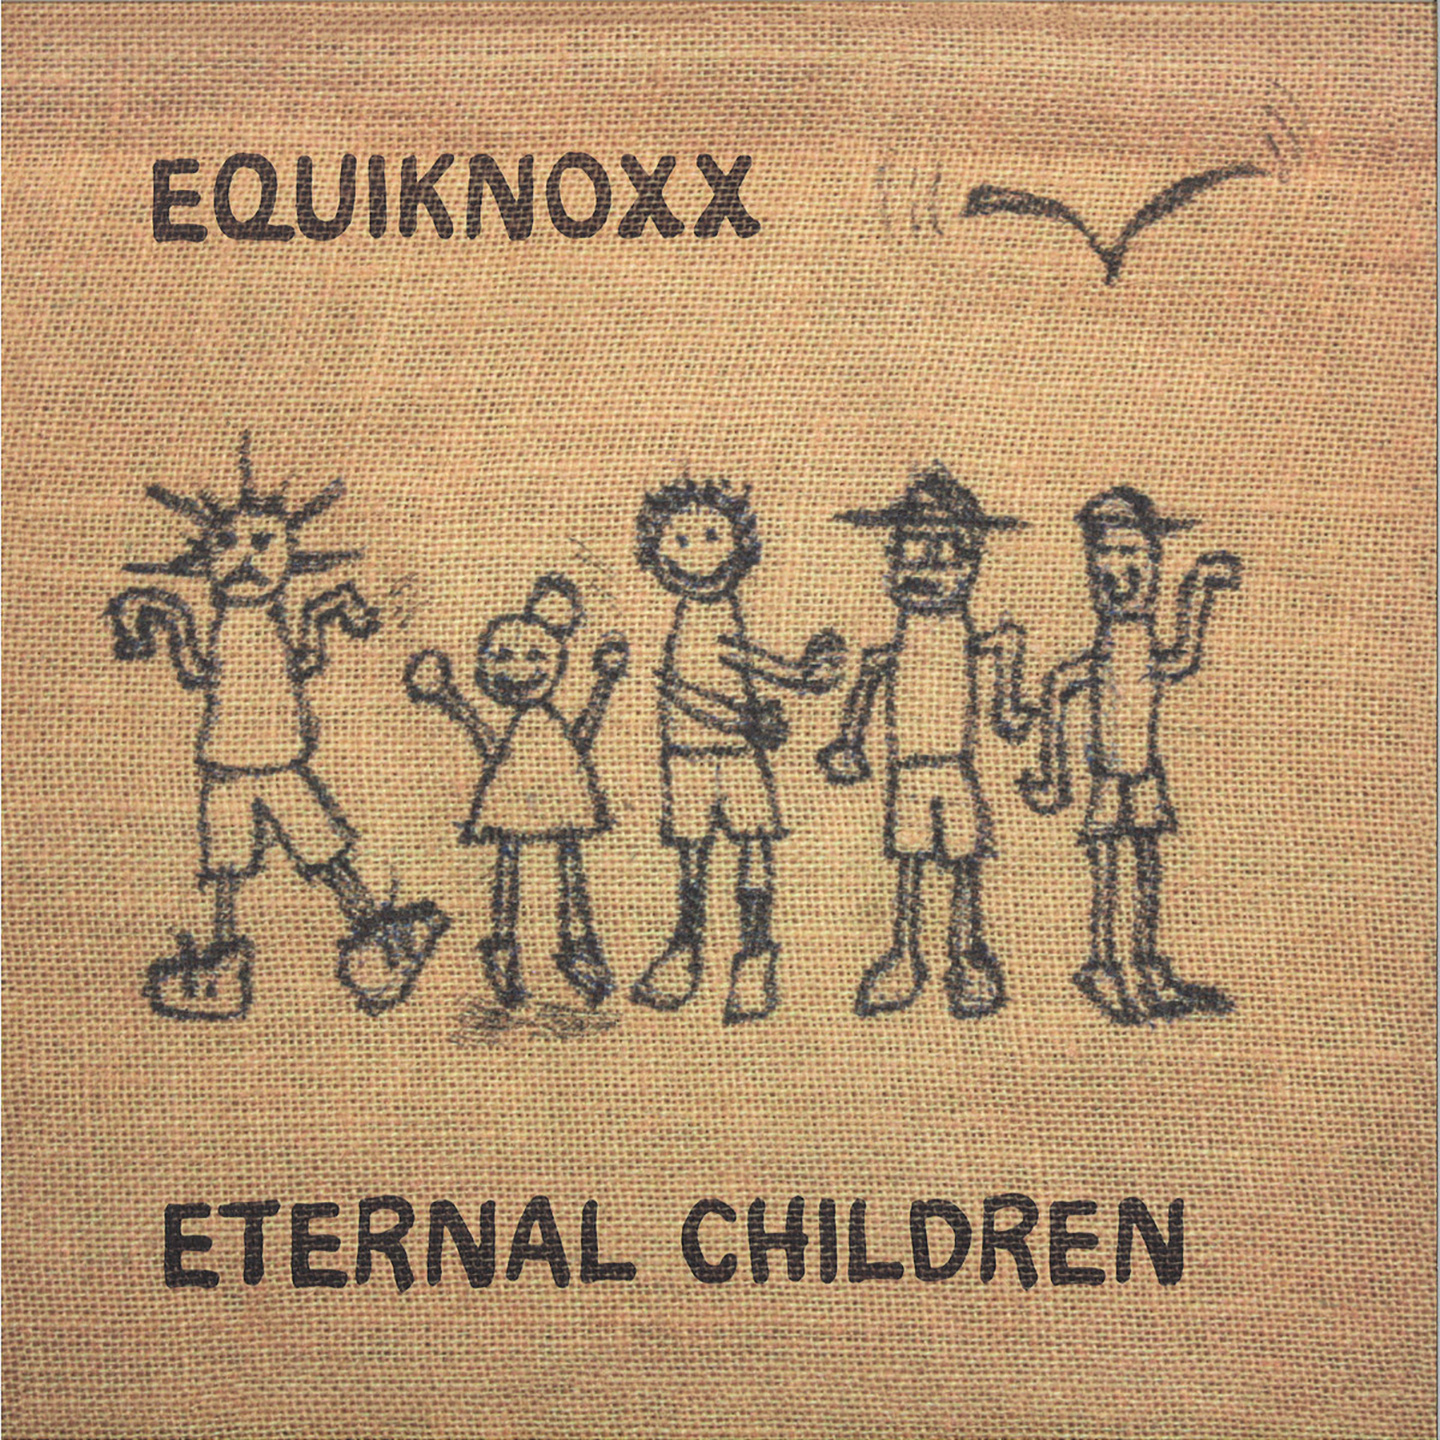 equiknoxx_eternal_children.jpg